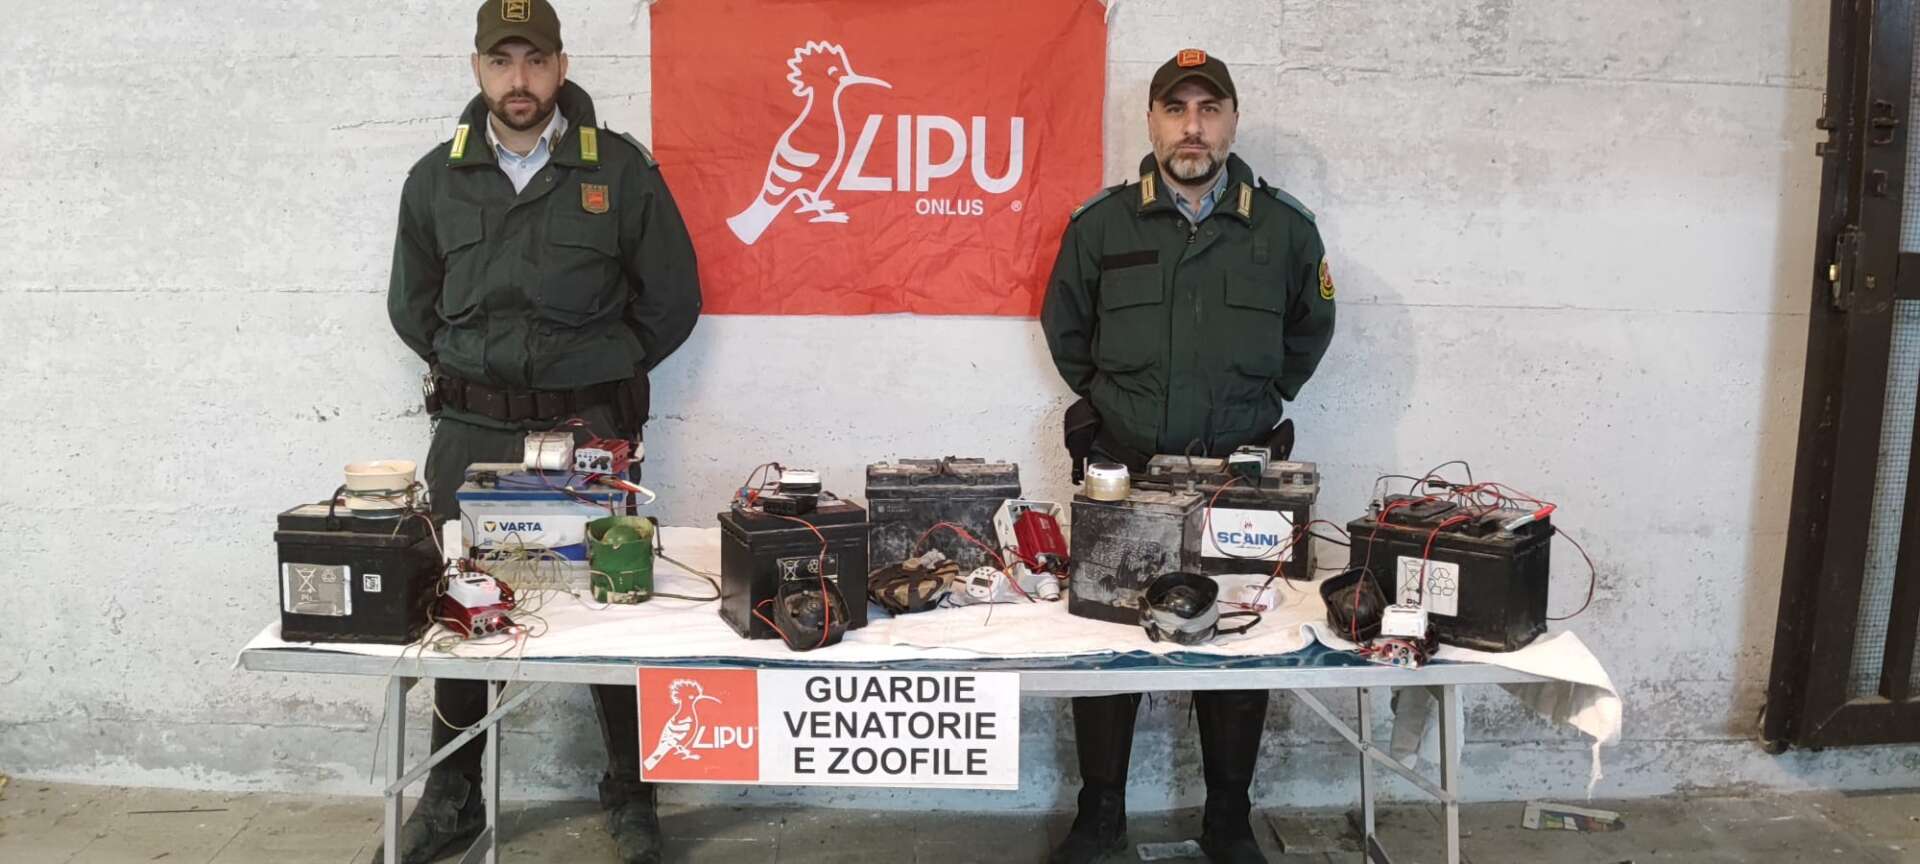 Guardie Lipu: operazione antibracconaggio notturno nelle campagne del Napoletano